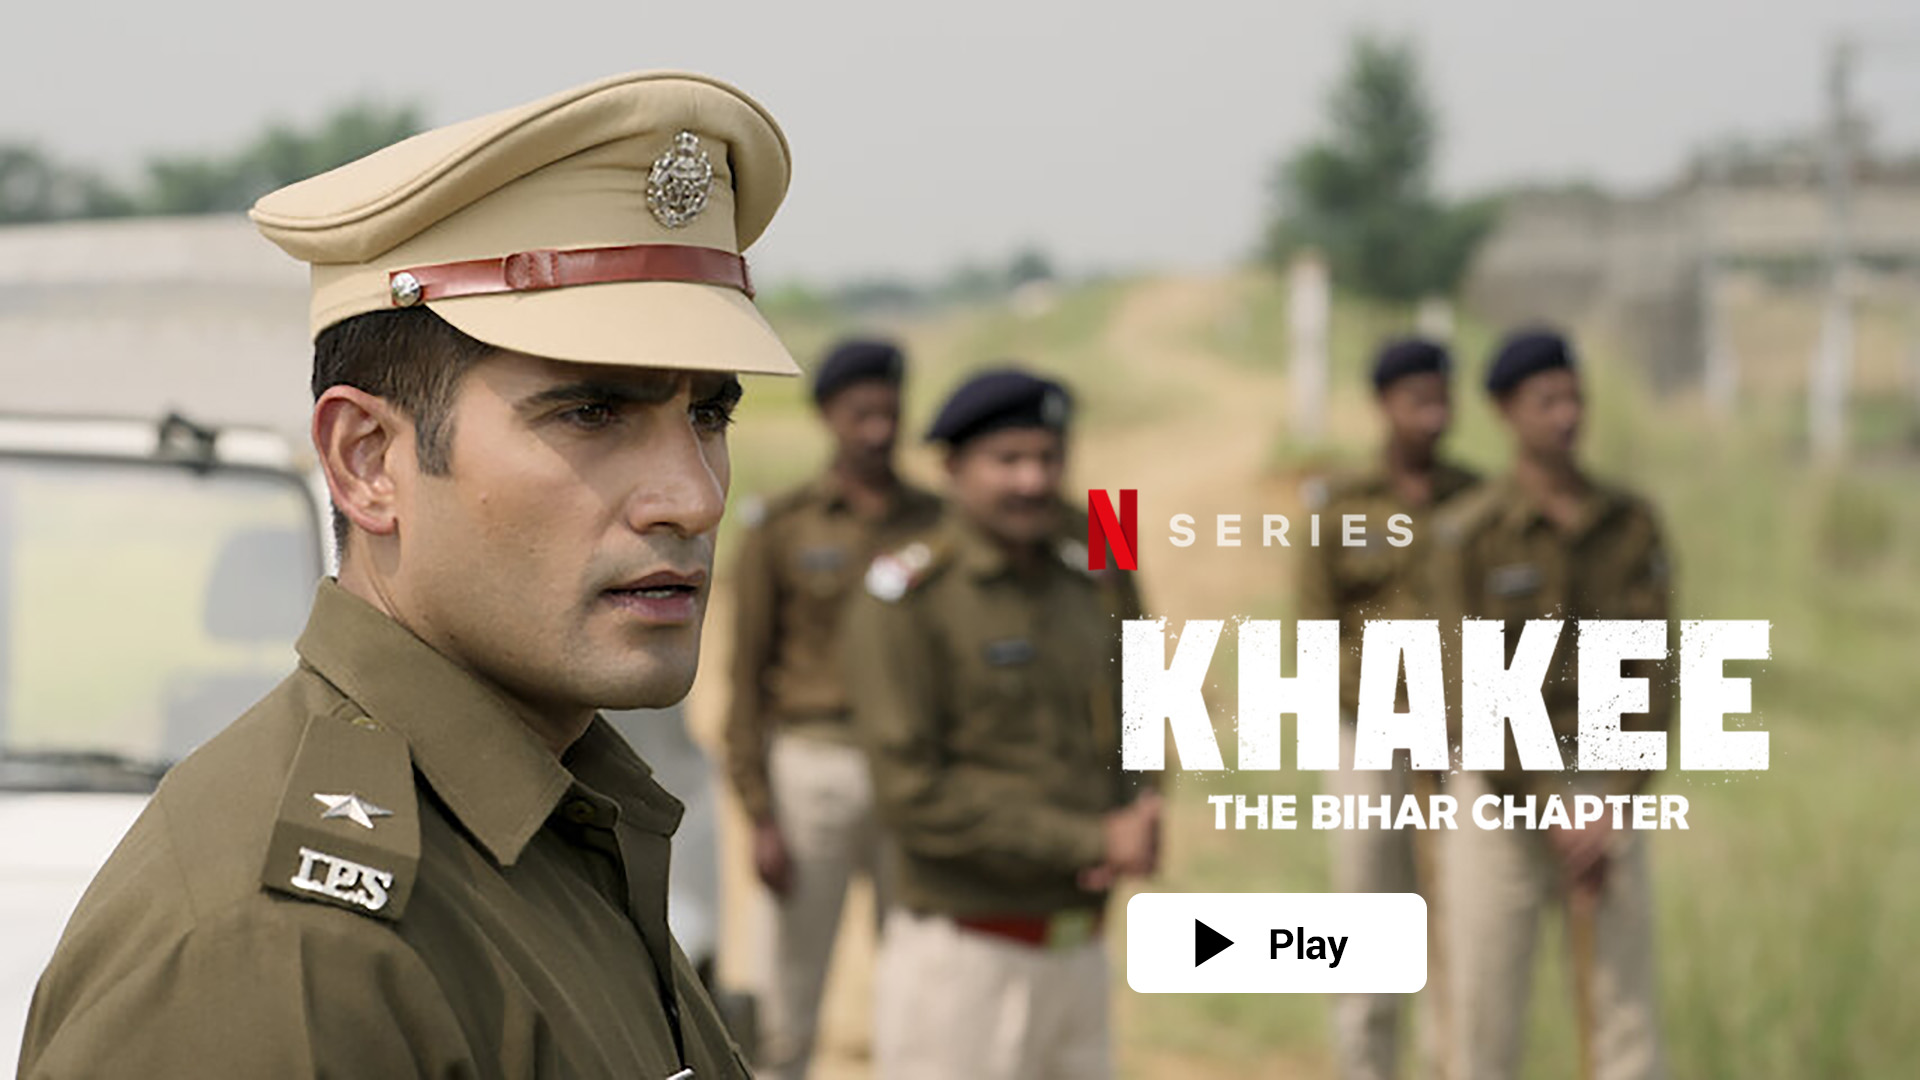 Watch Khakee the Bihar chapter on Netflix